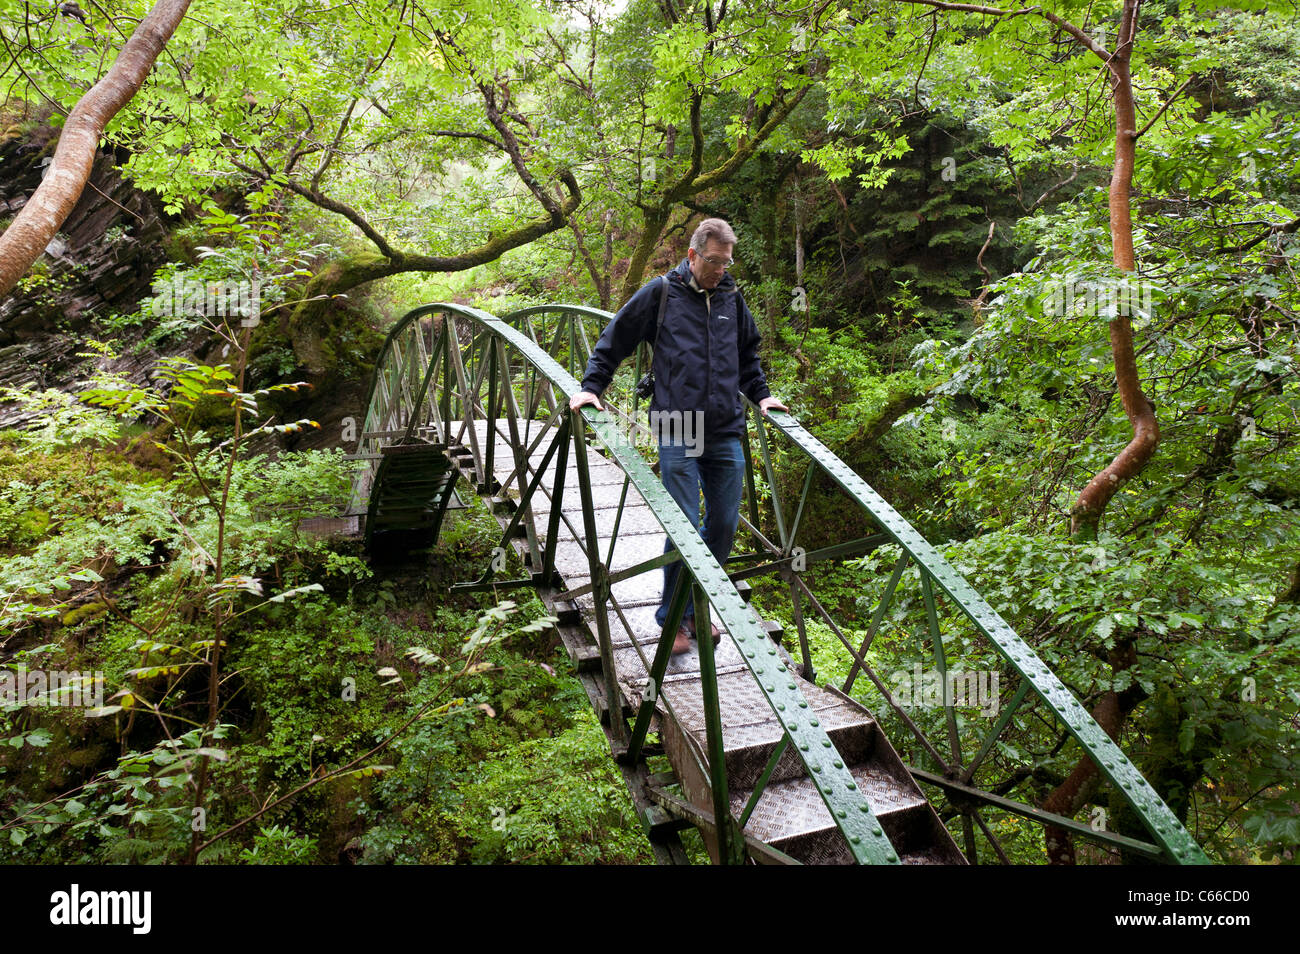 Metall-Bogenbrücke bei Teufelsbrücke Touristenattraktion - Inspiration für Wordsworth für "Auf Torrent bei Teufelsbrücke" Stockfoto